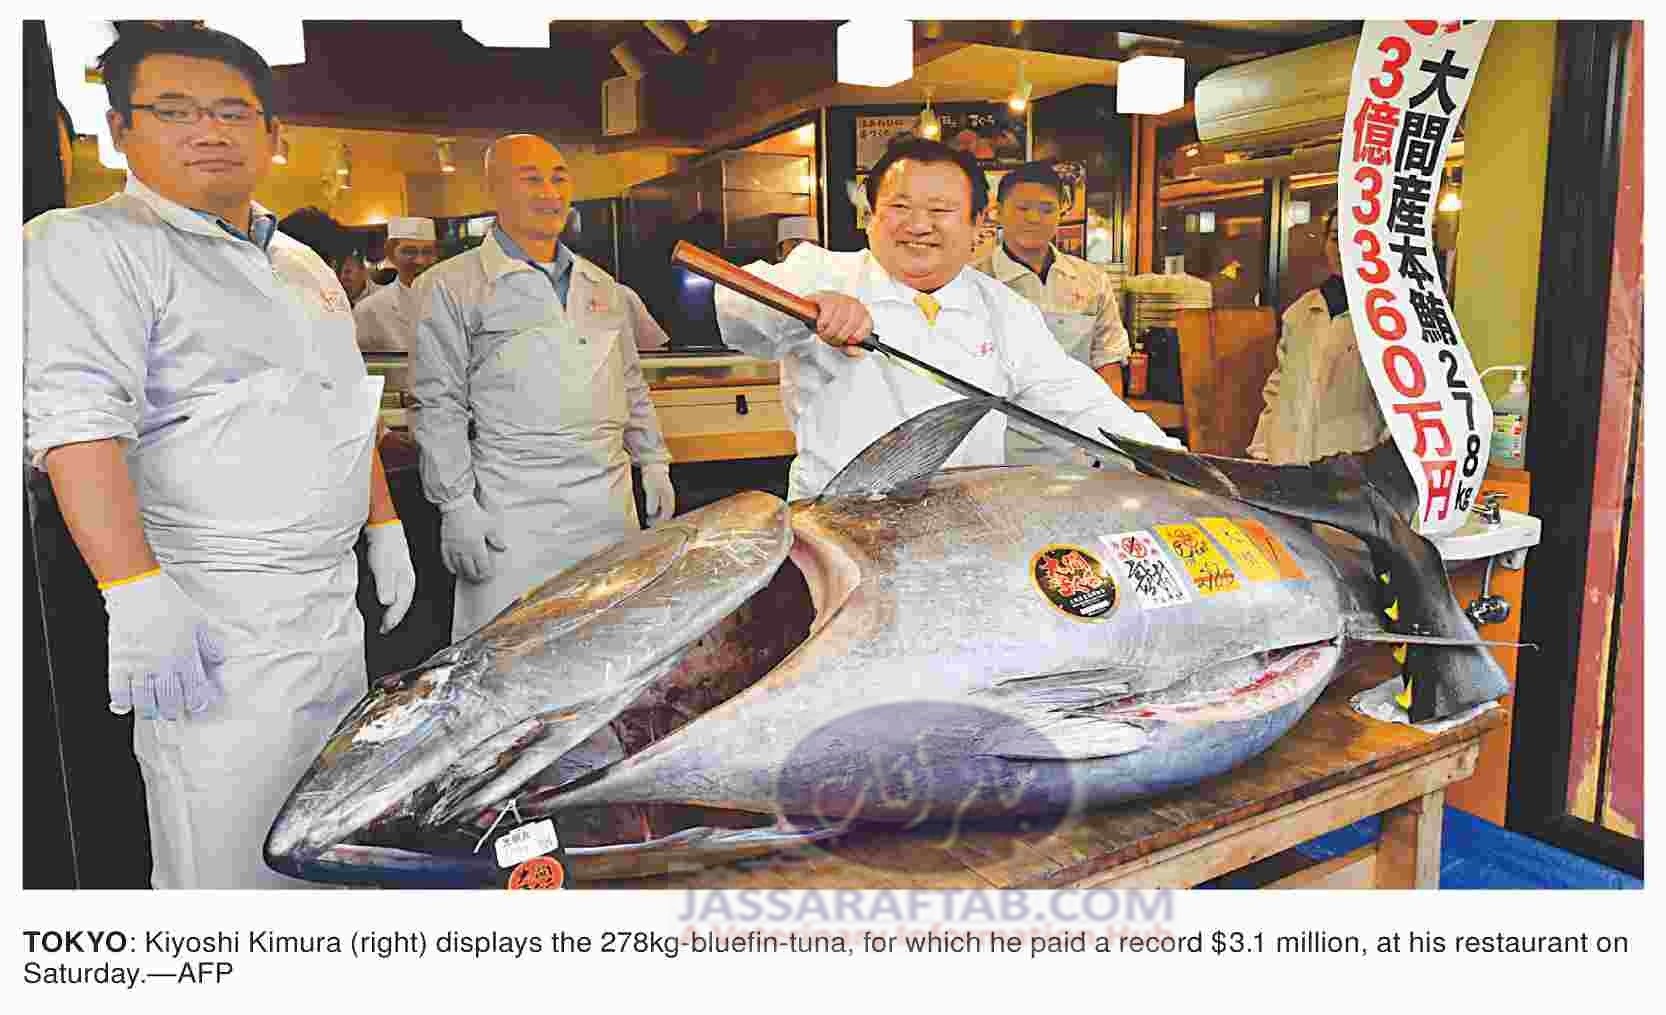 د نیا کی سب سے مہنگی مچھلی بلیو فن ٹونا  25 کروڑ میں فروخت